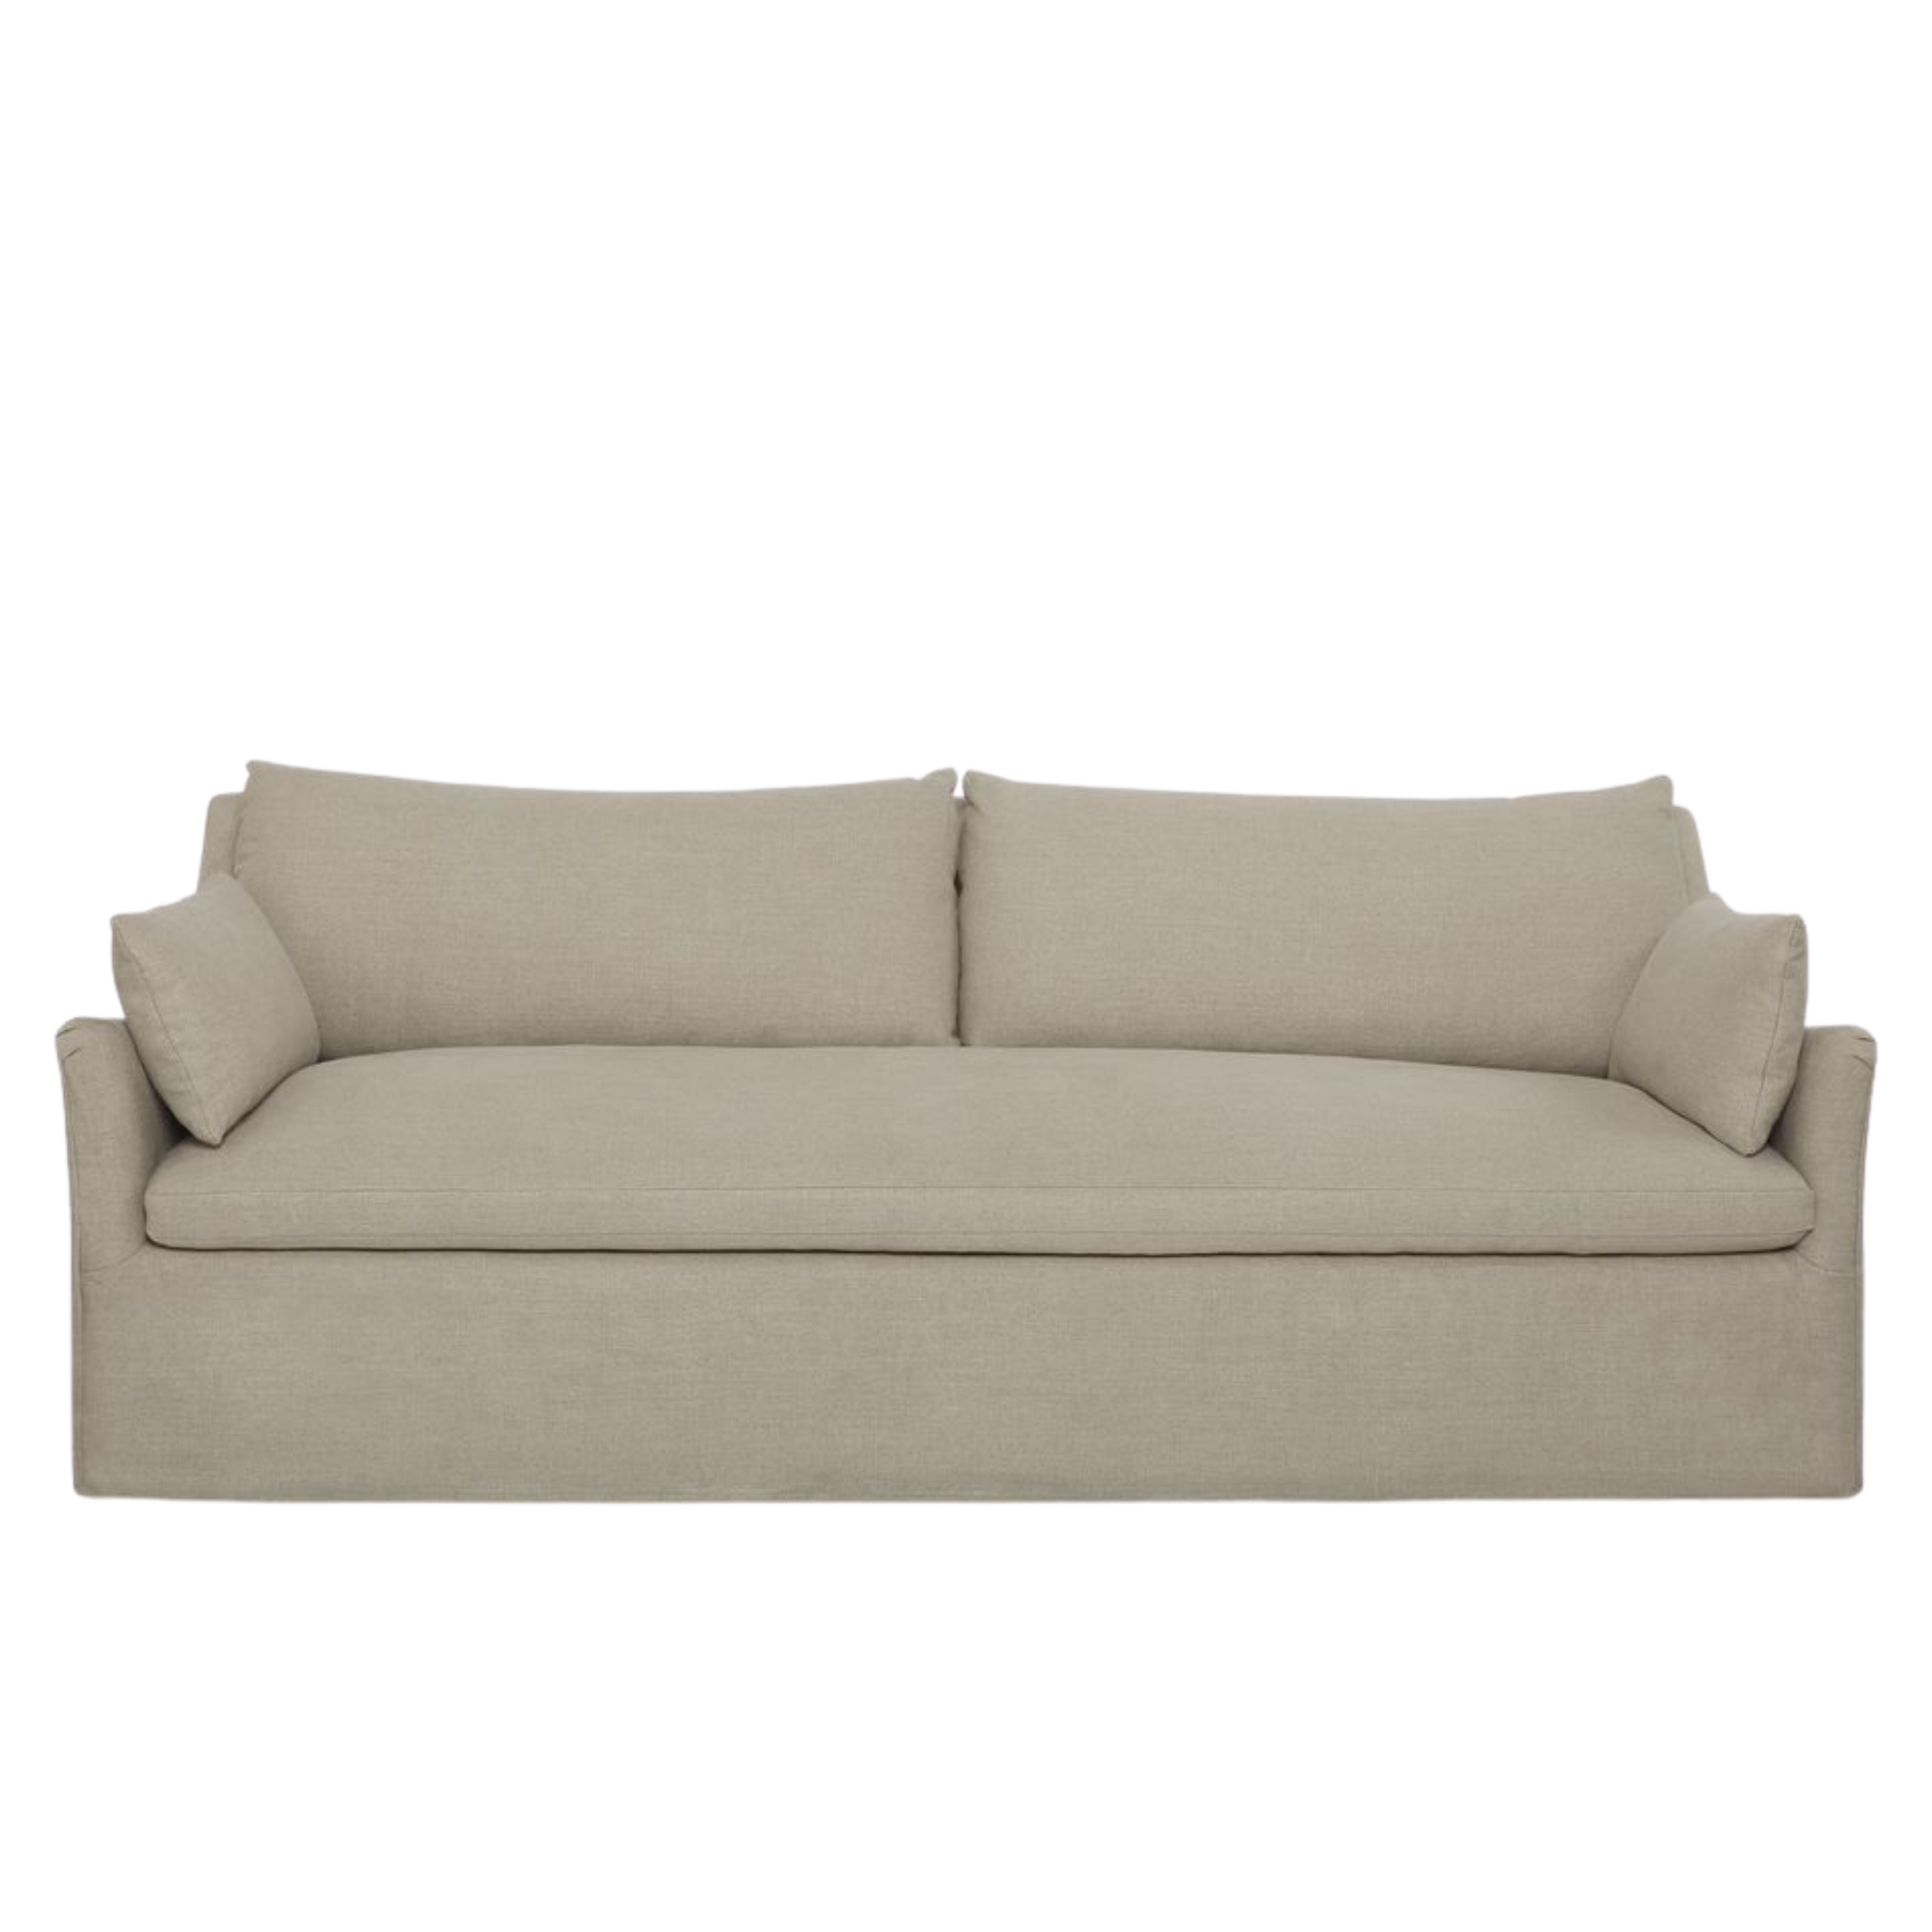 Portola Slipcovered Sofa